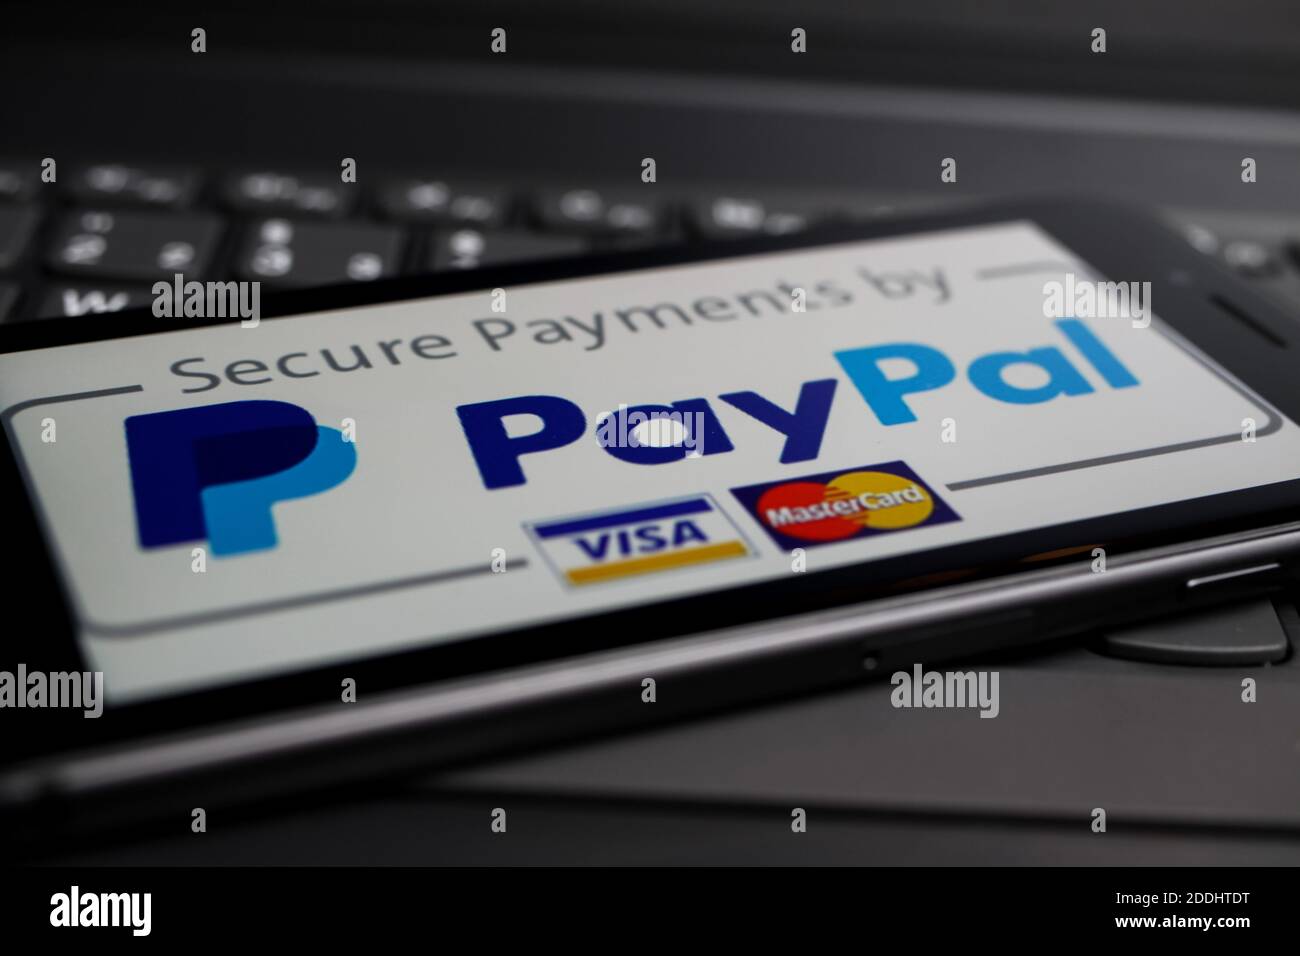 Viersen, Allemagne - mai 9. 2020: Gros plan de téléphone mobile isolé avec la société de service payant Paypal logo lettering sur le clavier d'ordinateur Banque D'Images